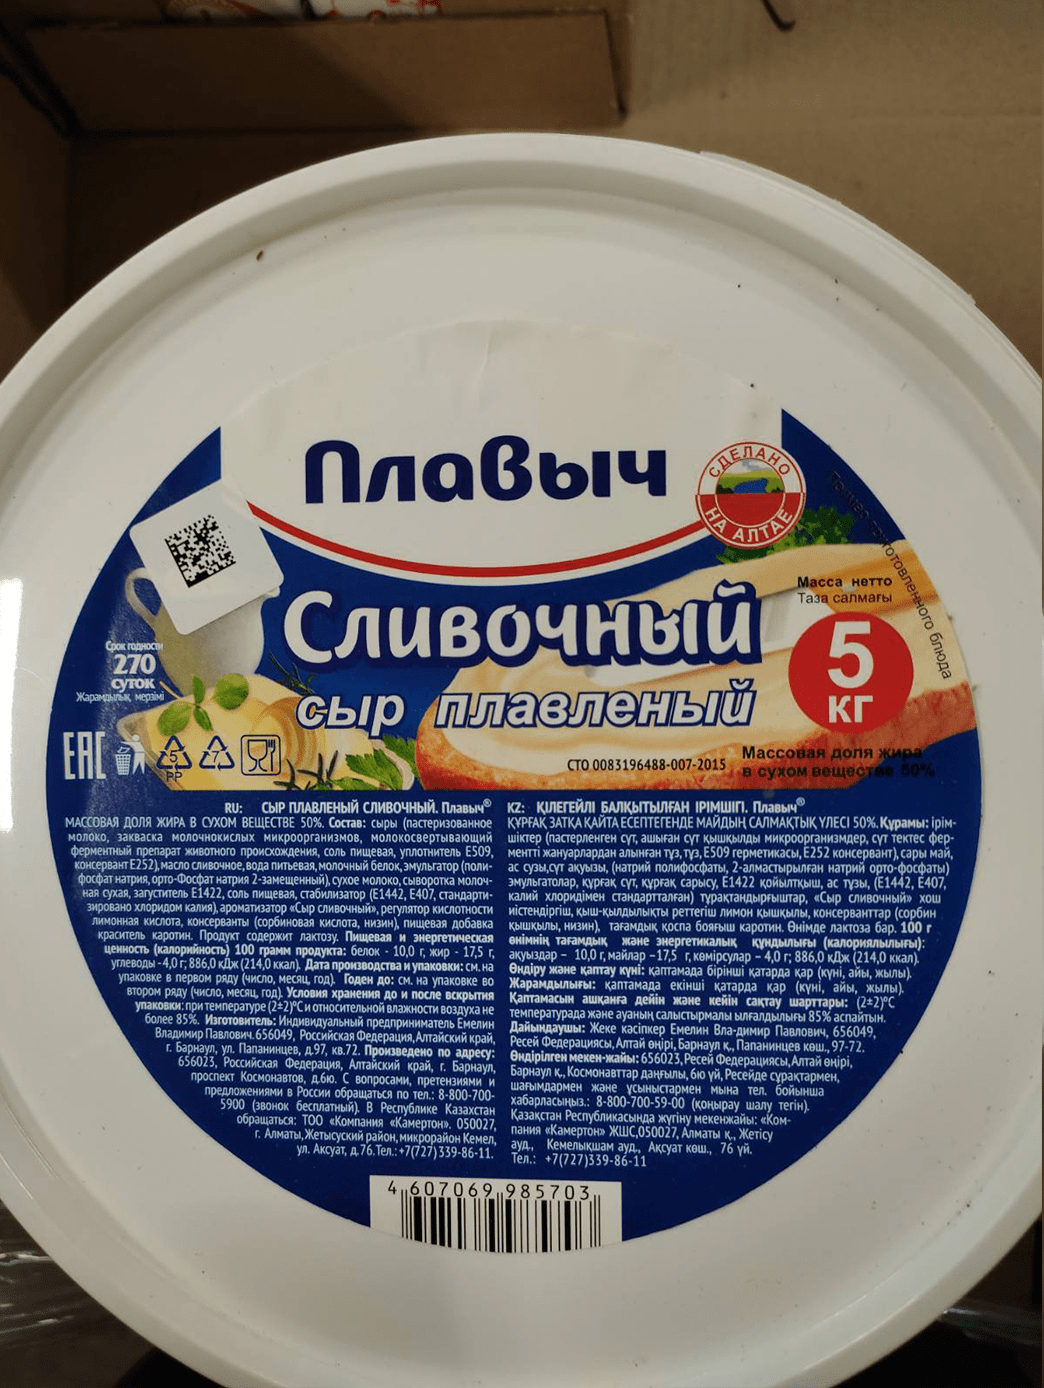 230 Сыр плавленый сливочный «Плавыч» 5кг